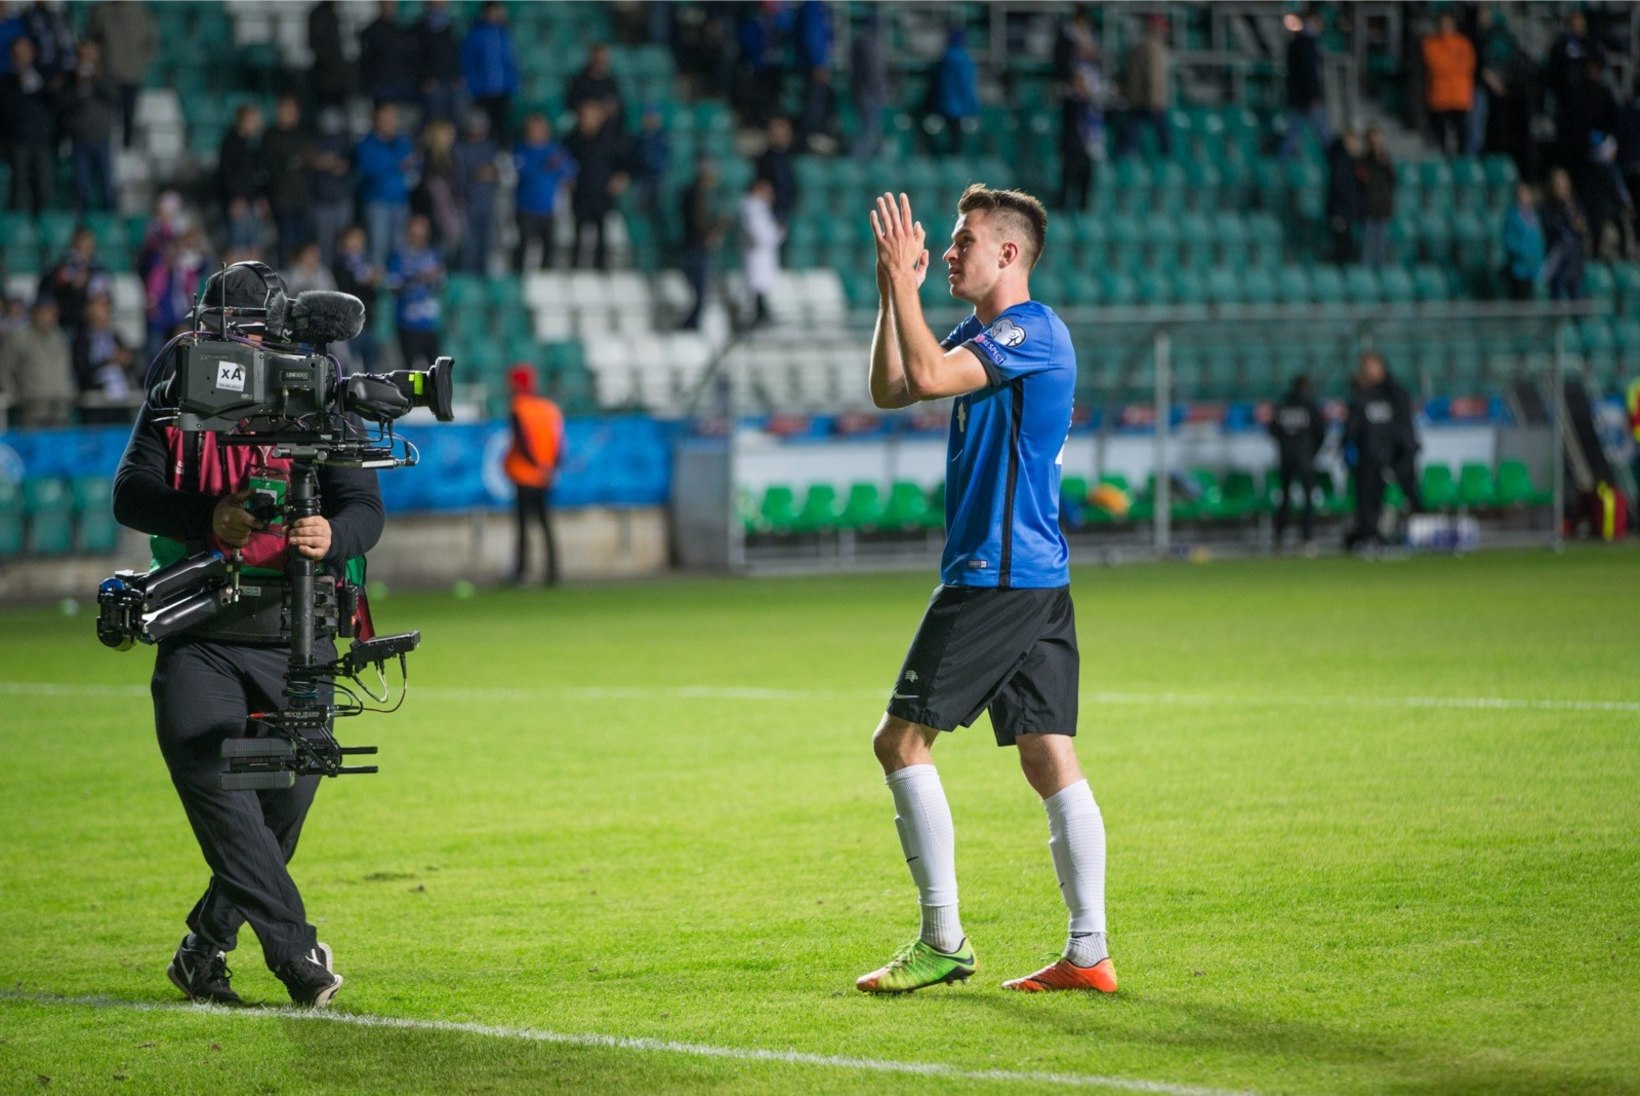 KOLMAS POOLAEG | Kas Eesti jalgpallikoondis on leidnud ideaalse taktika?